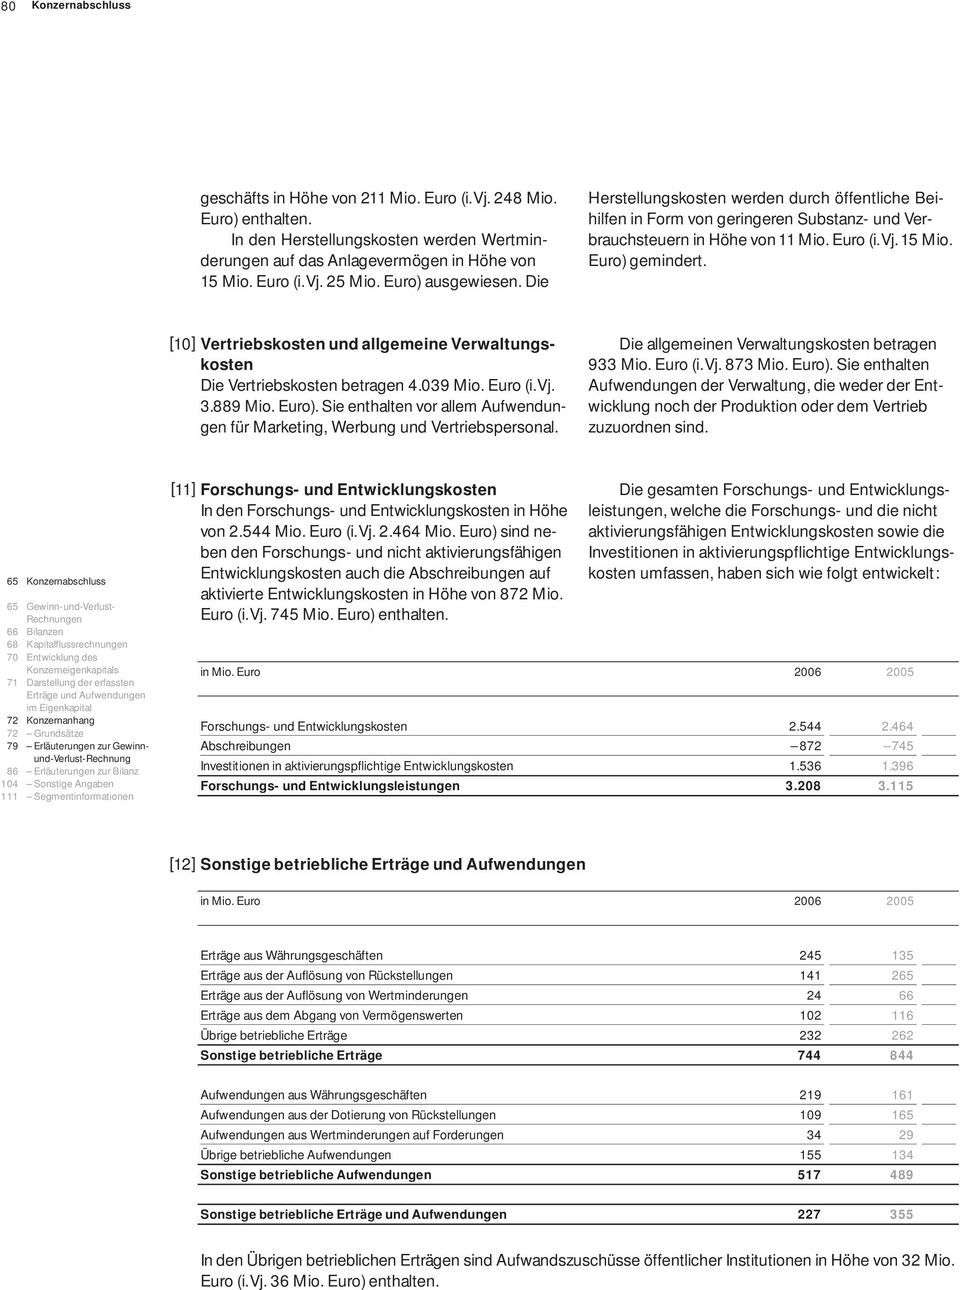 [10] Vertriebskosten und allgemeine Verwaltungskosten Die Vertriebskosten betragen 4.039 Mio. Euro (i.vj. 3.889 Mio. Euro).